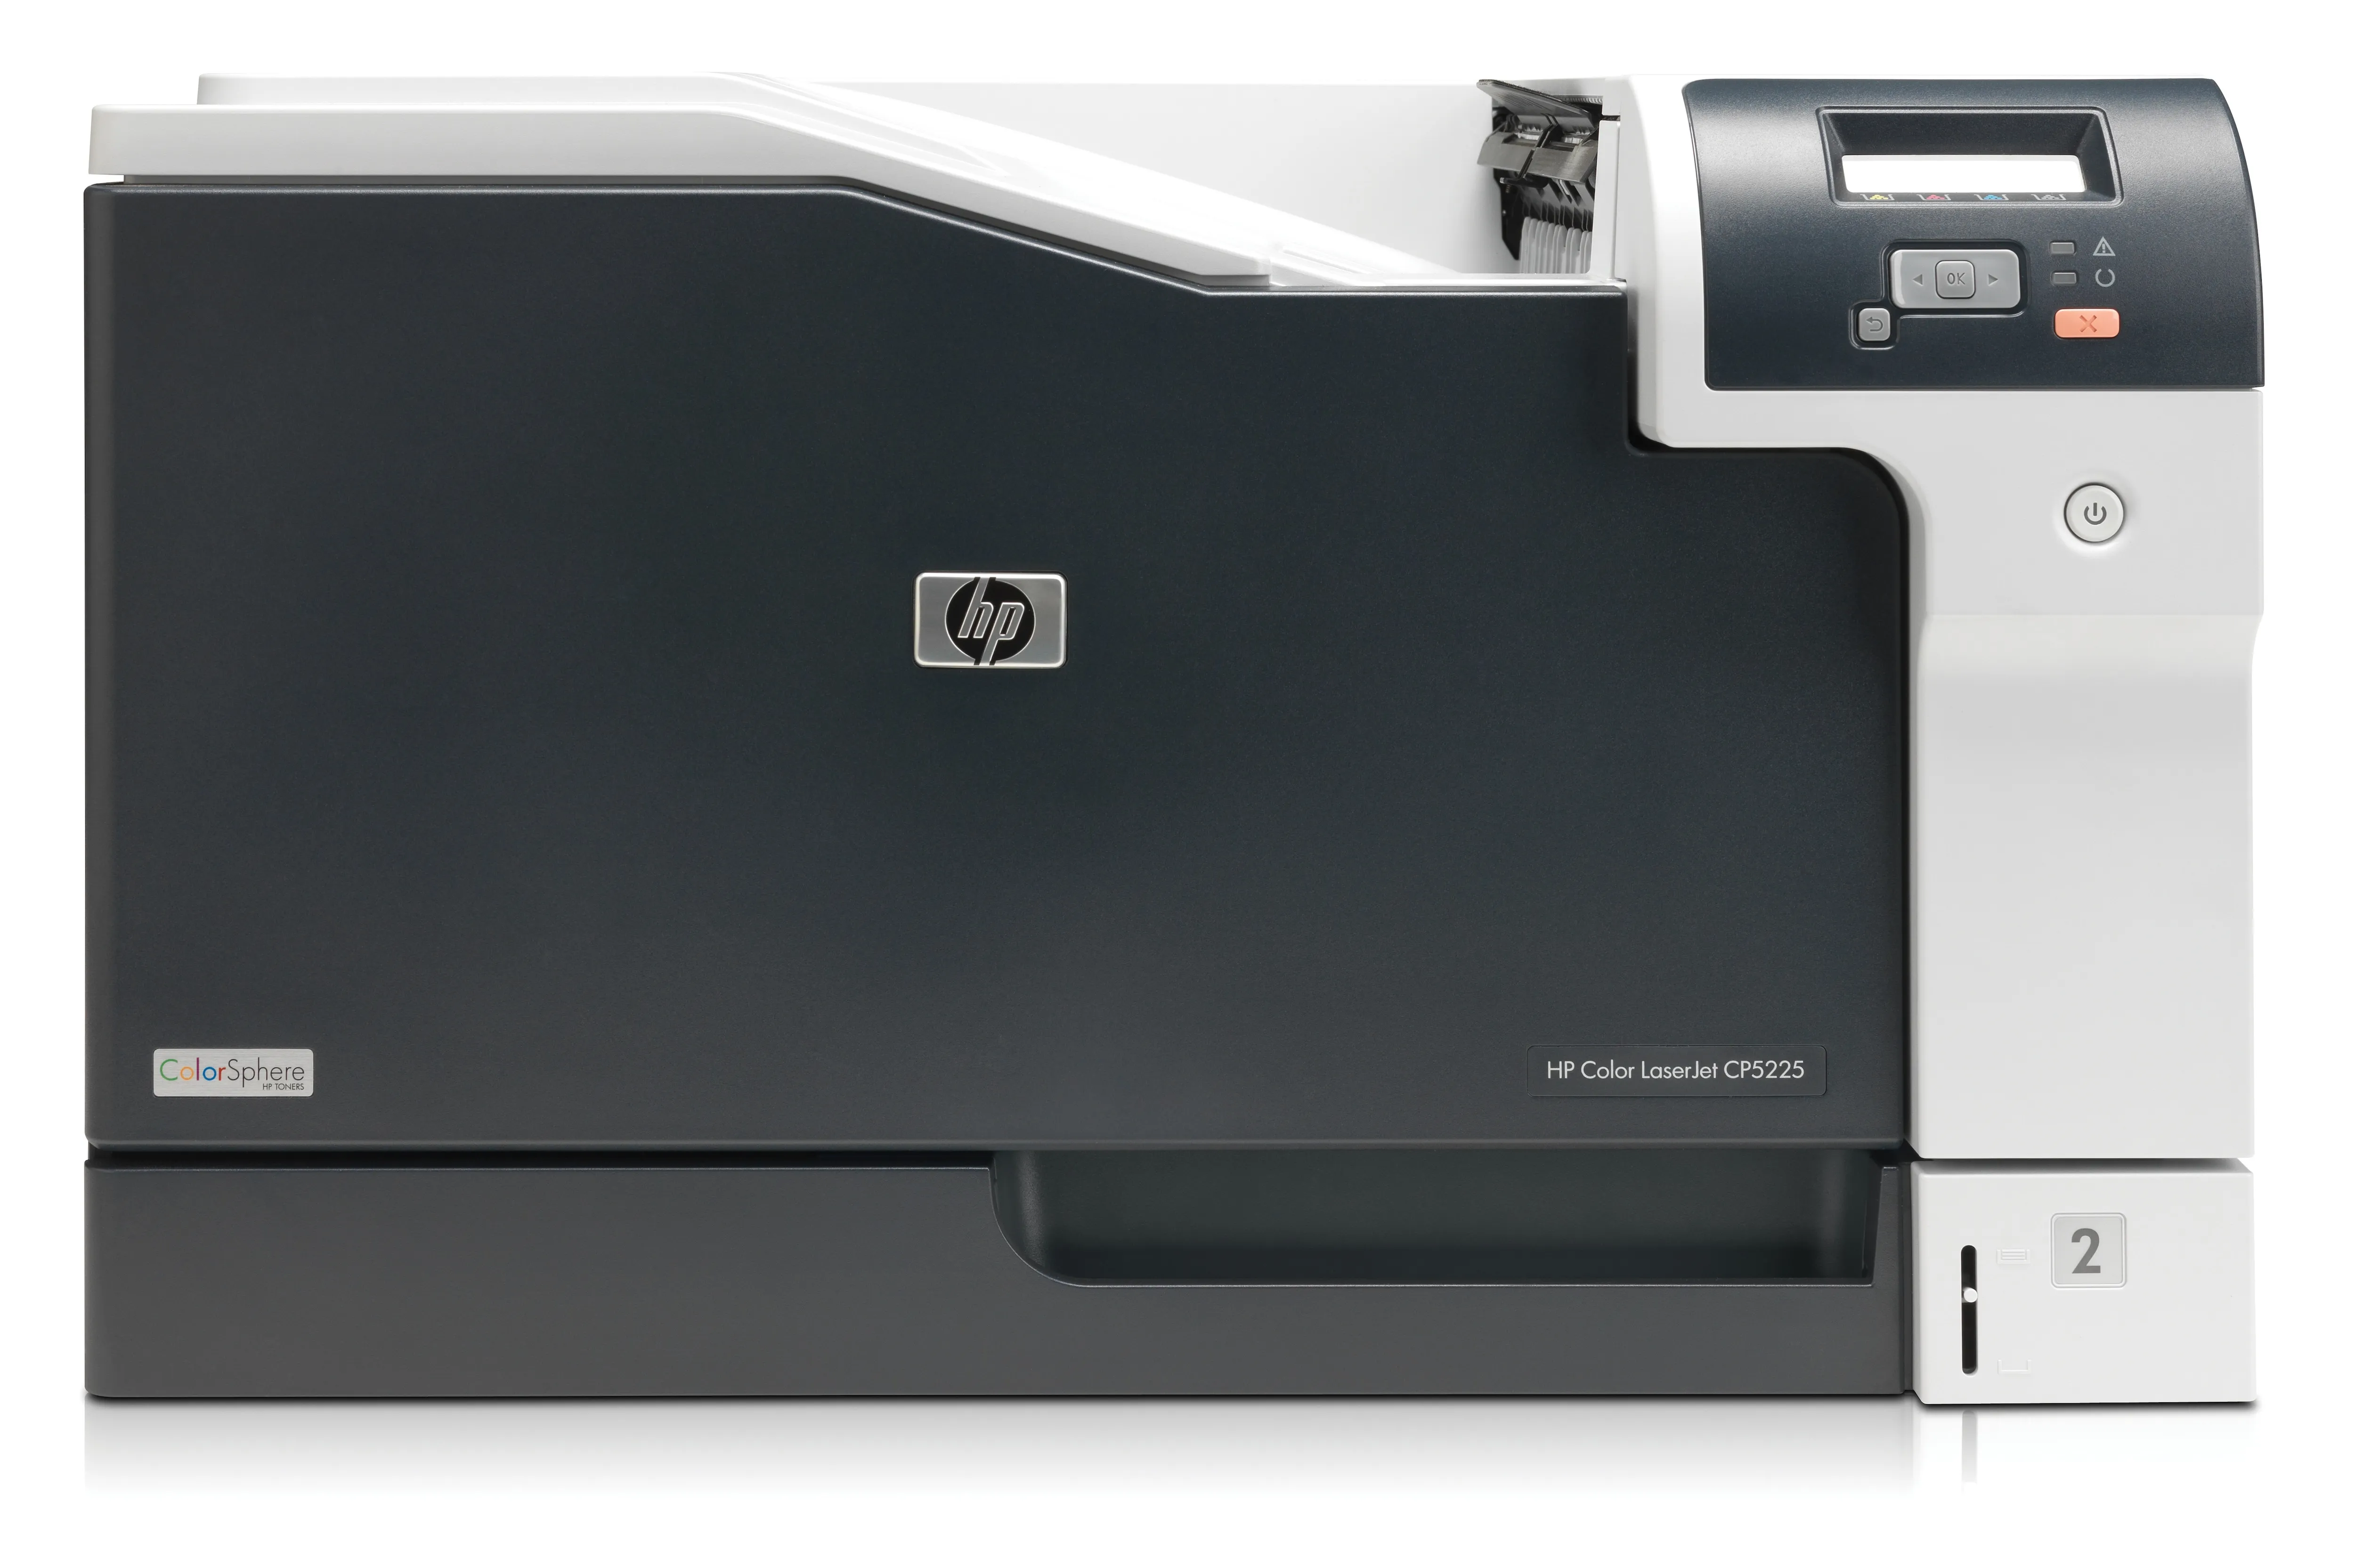 Vente HP LASERJET COLOR CP5225N HP au meilleur prix - visuel 10